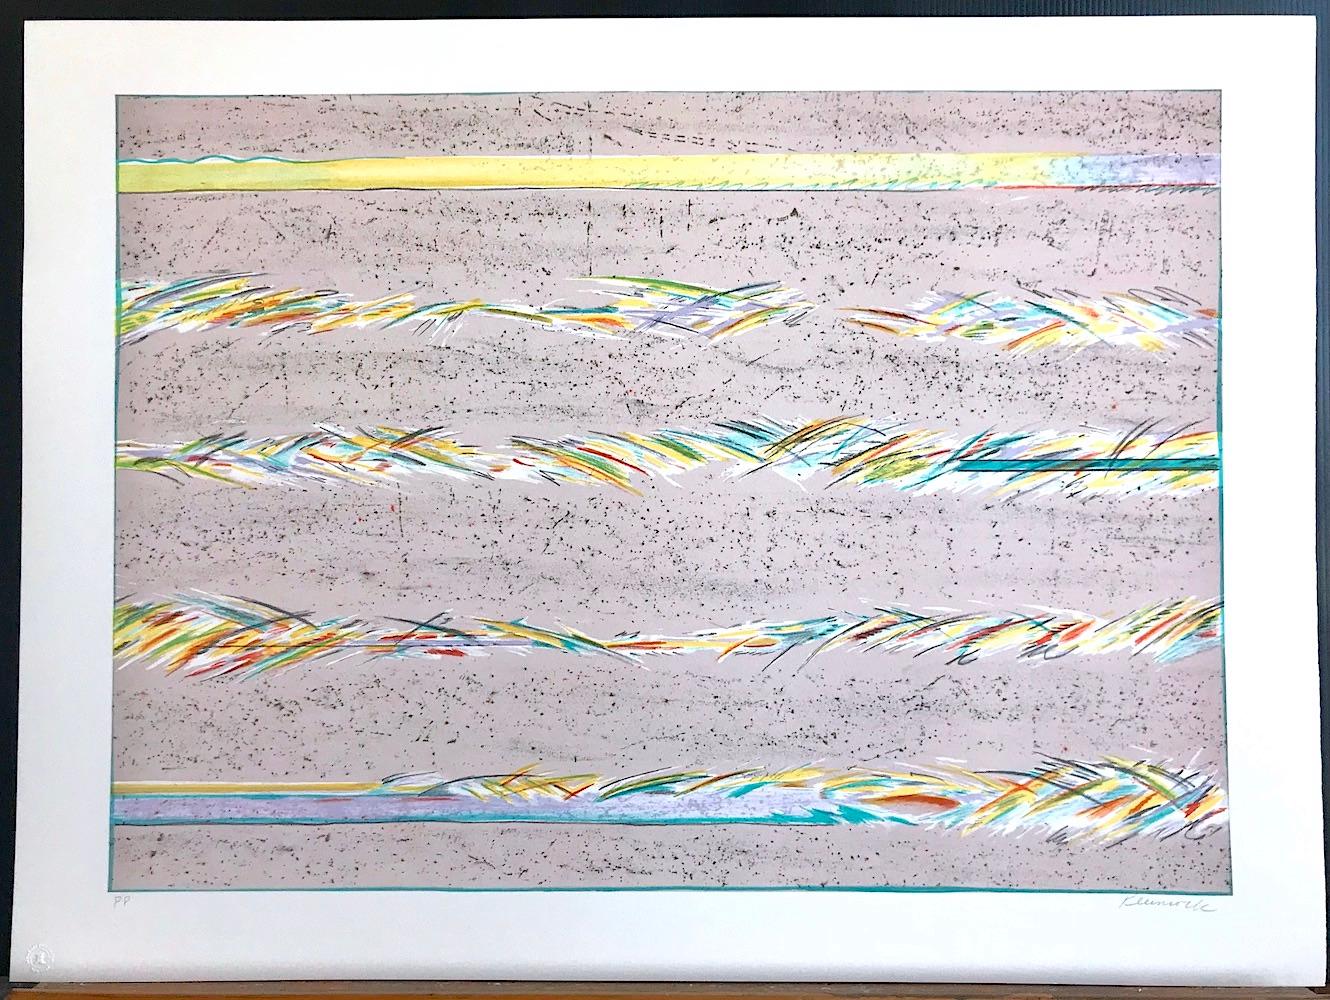 DREAMFIELDS III ist eine handgezeichnete Originallithografie der Künstlerin Sybil Kleinrock (Ehefrau des bekannten Schmuckdesigners David Yurman). Es wurde in sieben Farben unter Verwendung traditioneller Handlithografietechniken auf archivfähigem